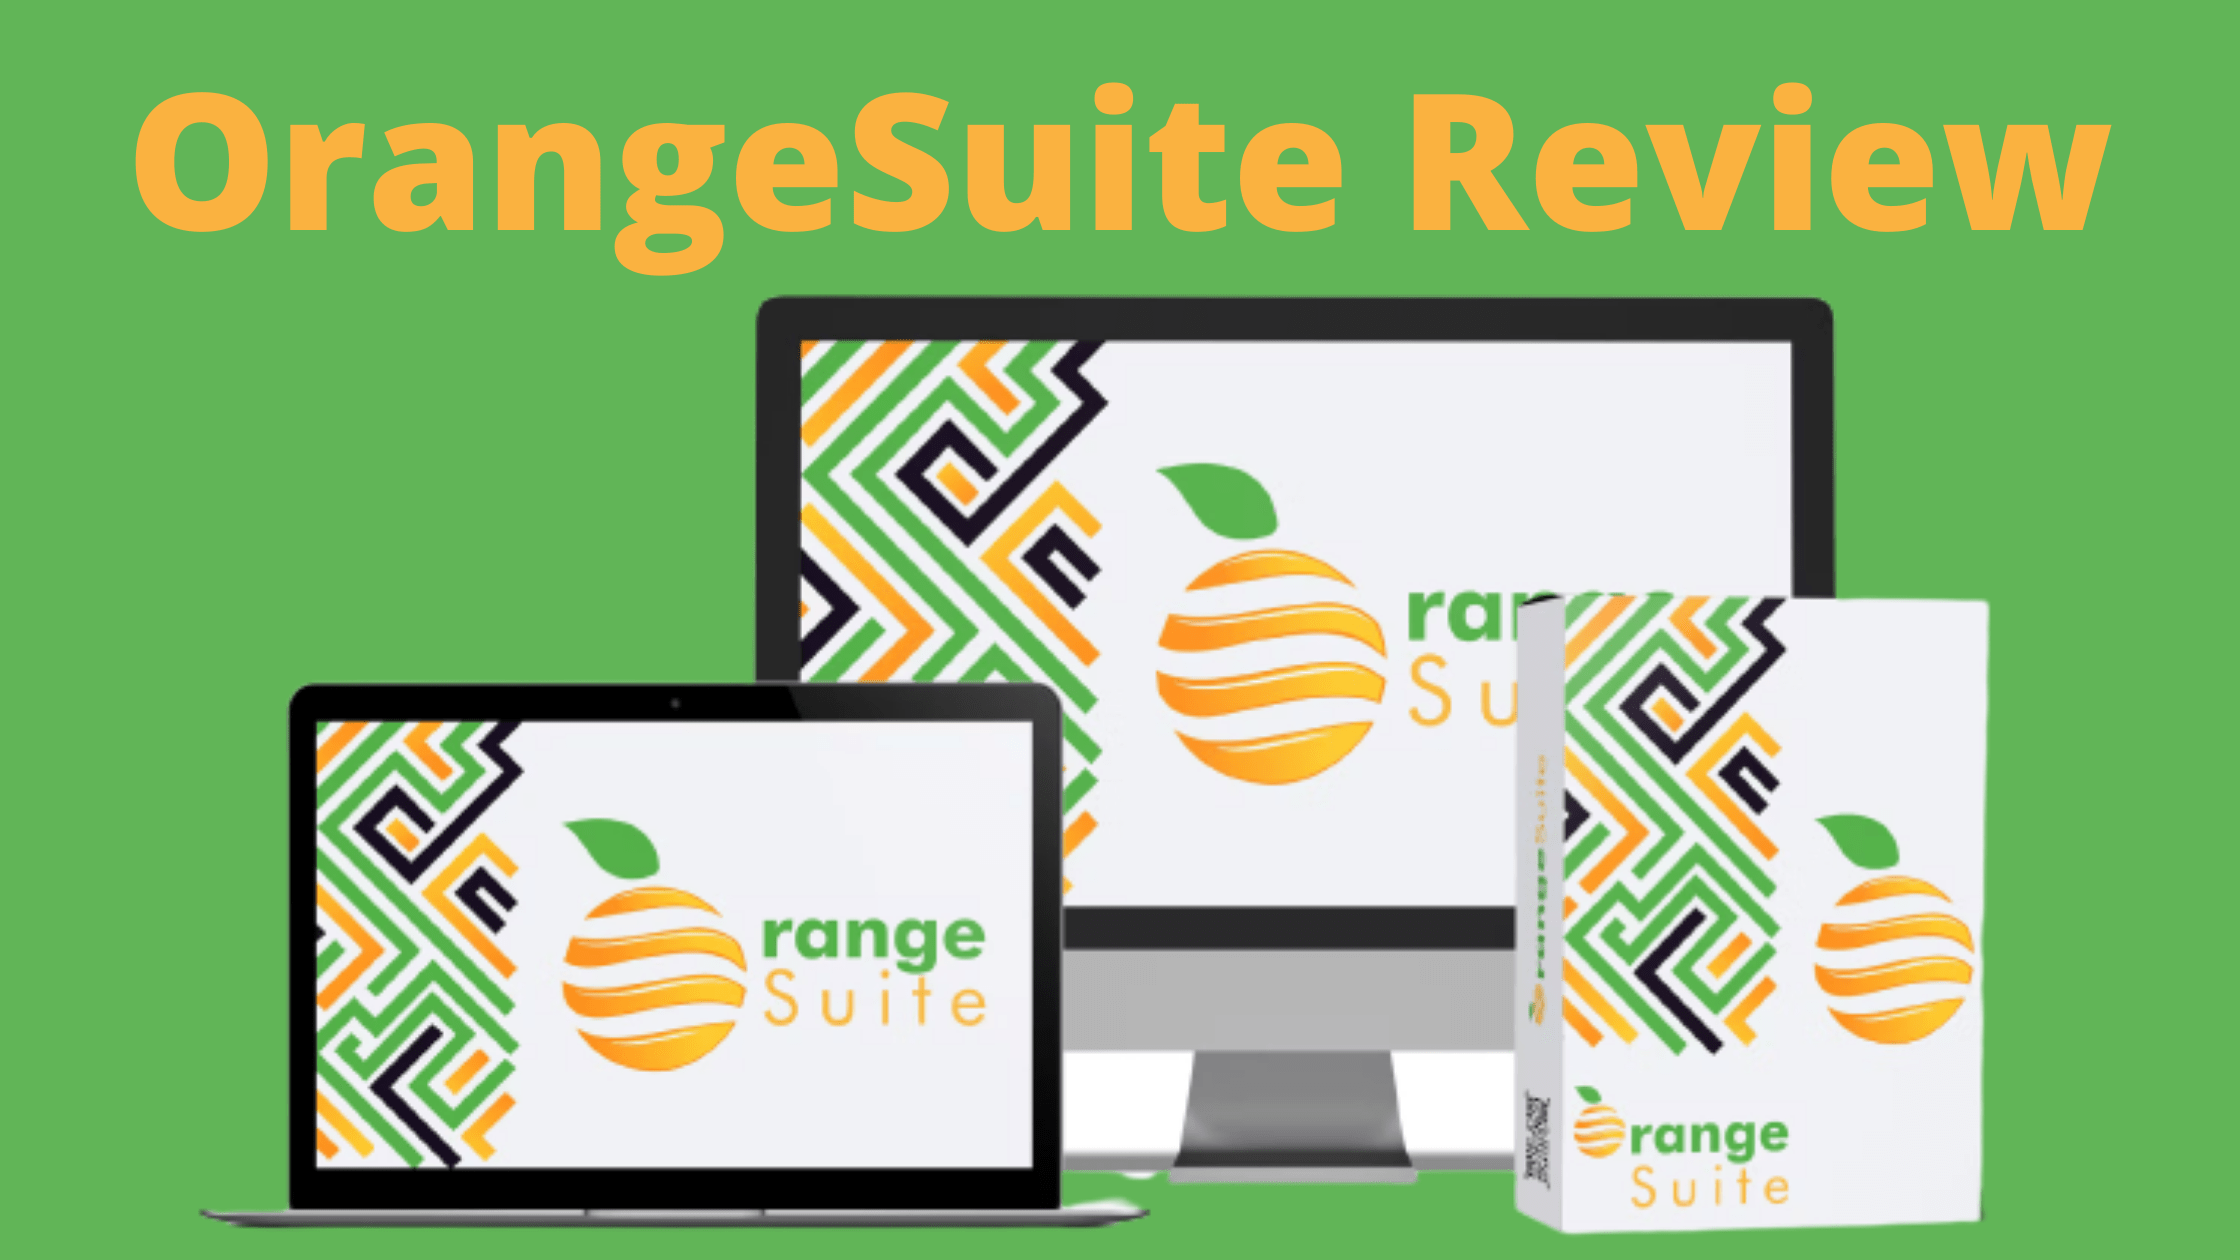 OrangeSuite Review